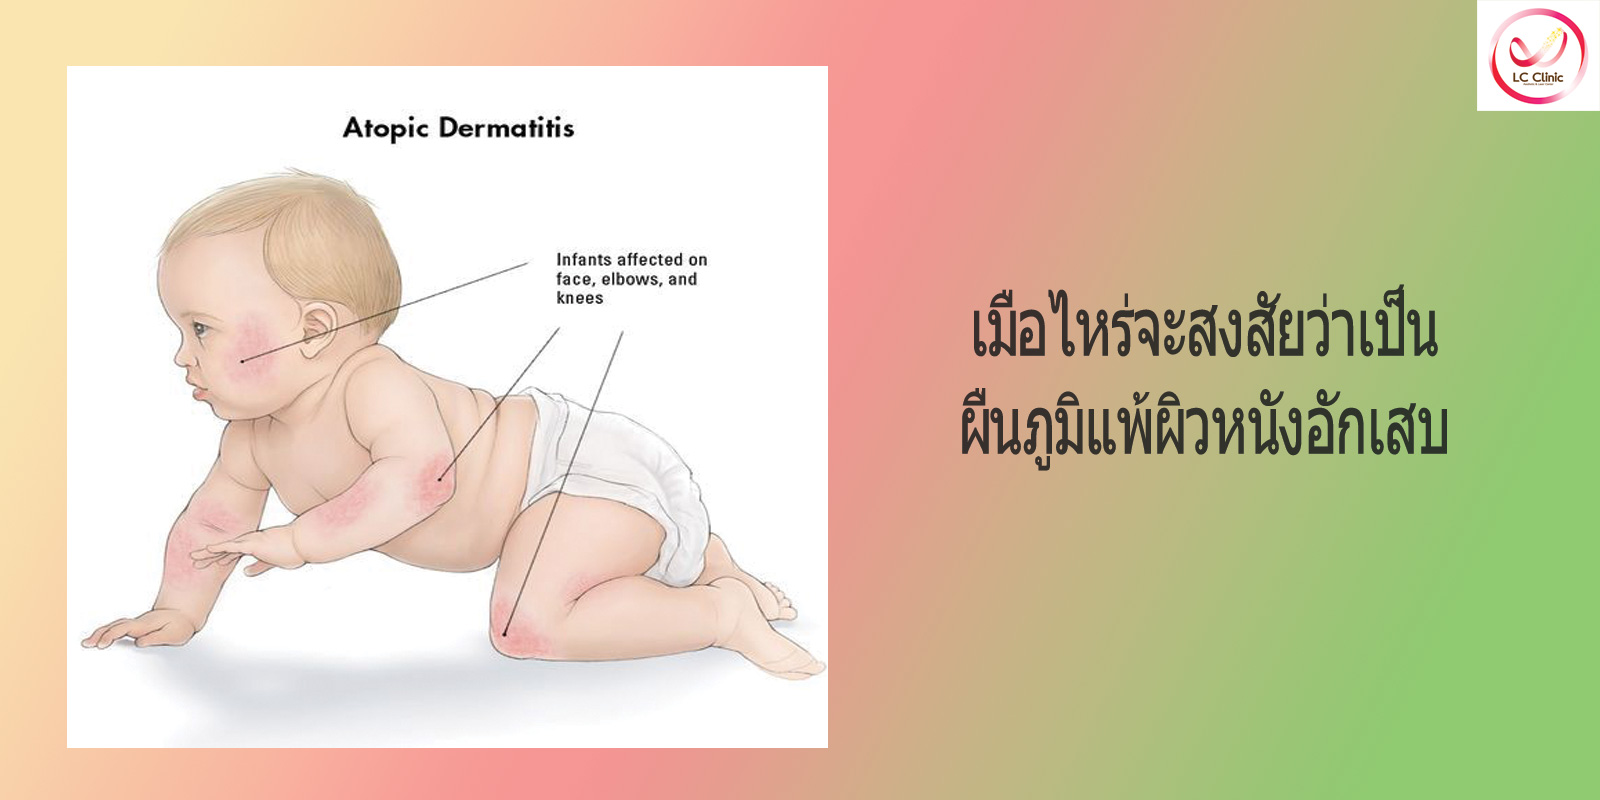 โรคผื่นภูมิแพ้ผิวหนังอักเสบ (Atopic Dermatitis)